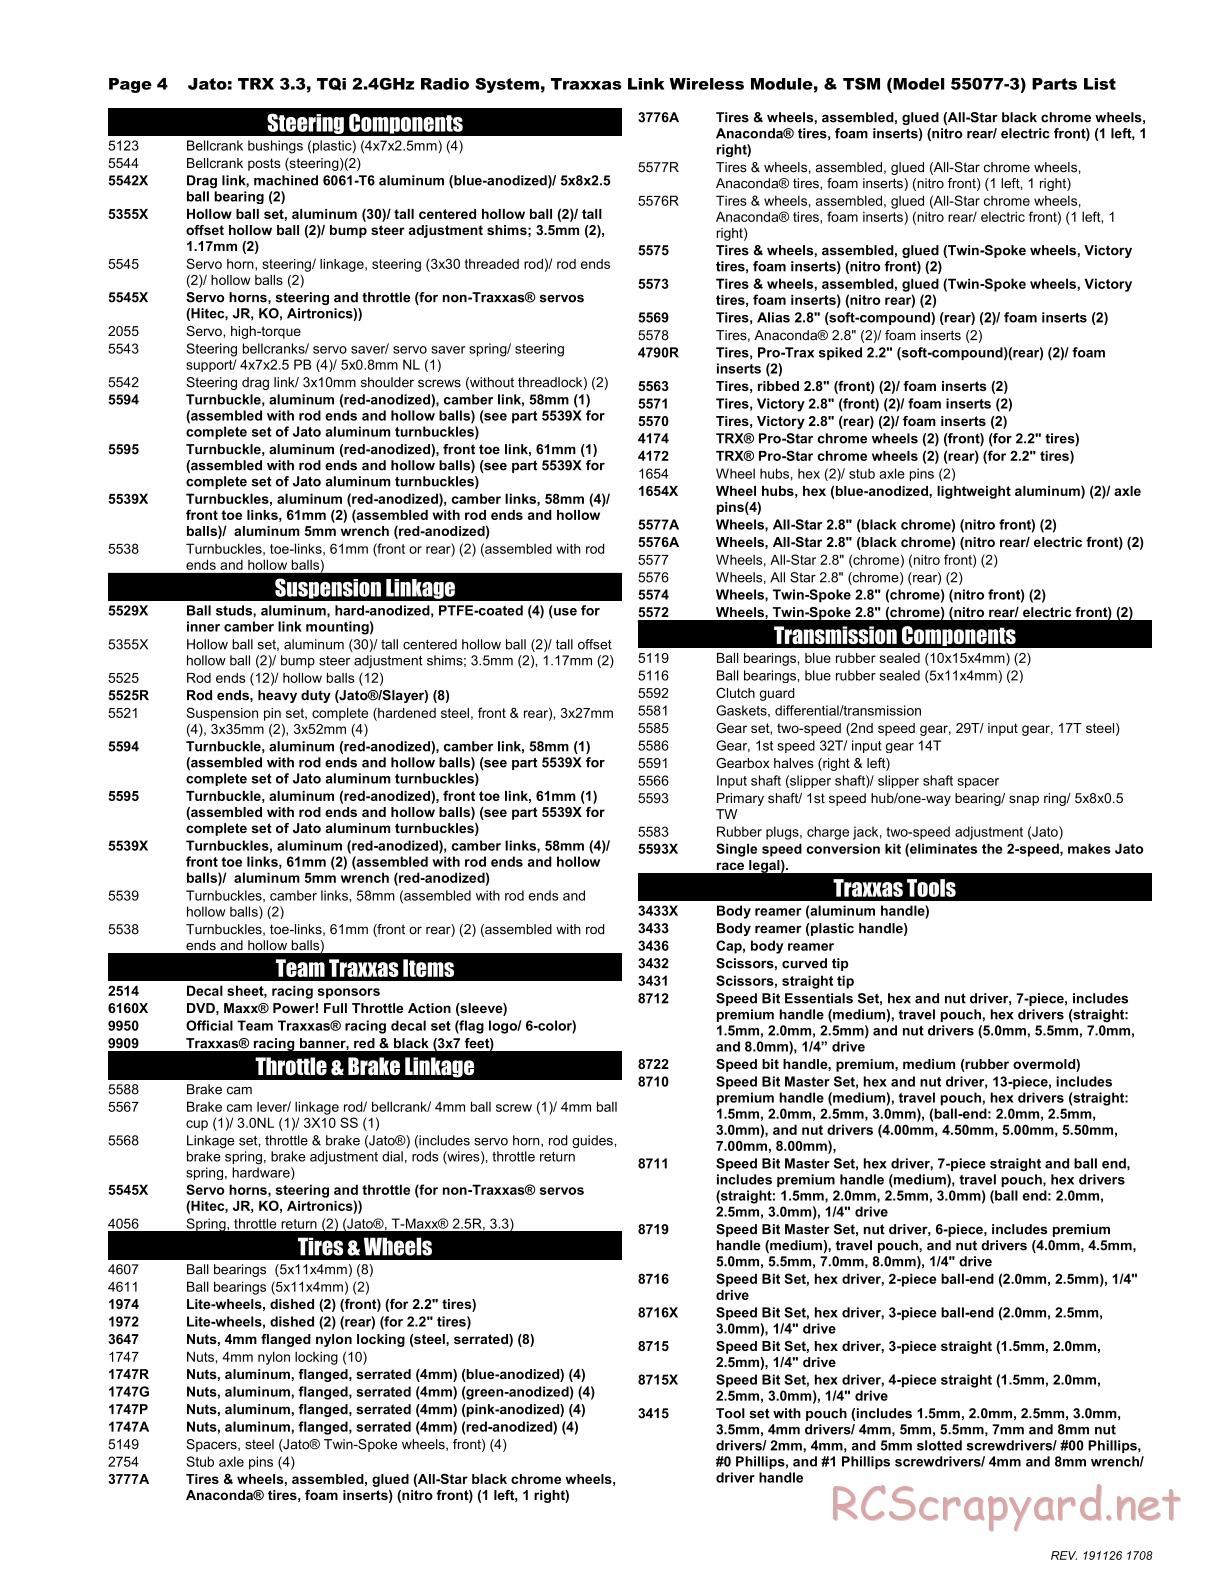 Traxxas - Jato 3.3 TSM - Parts List - Page 4